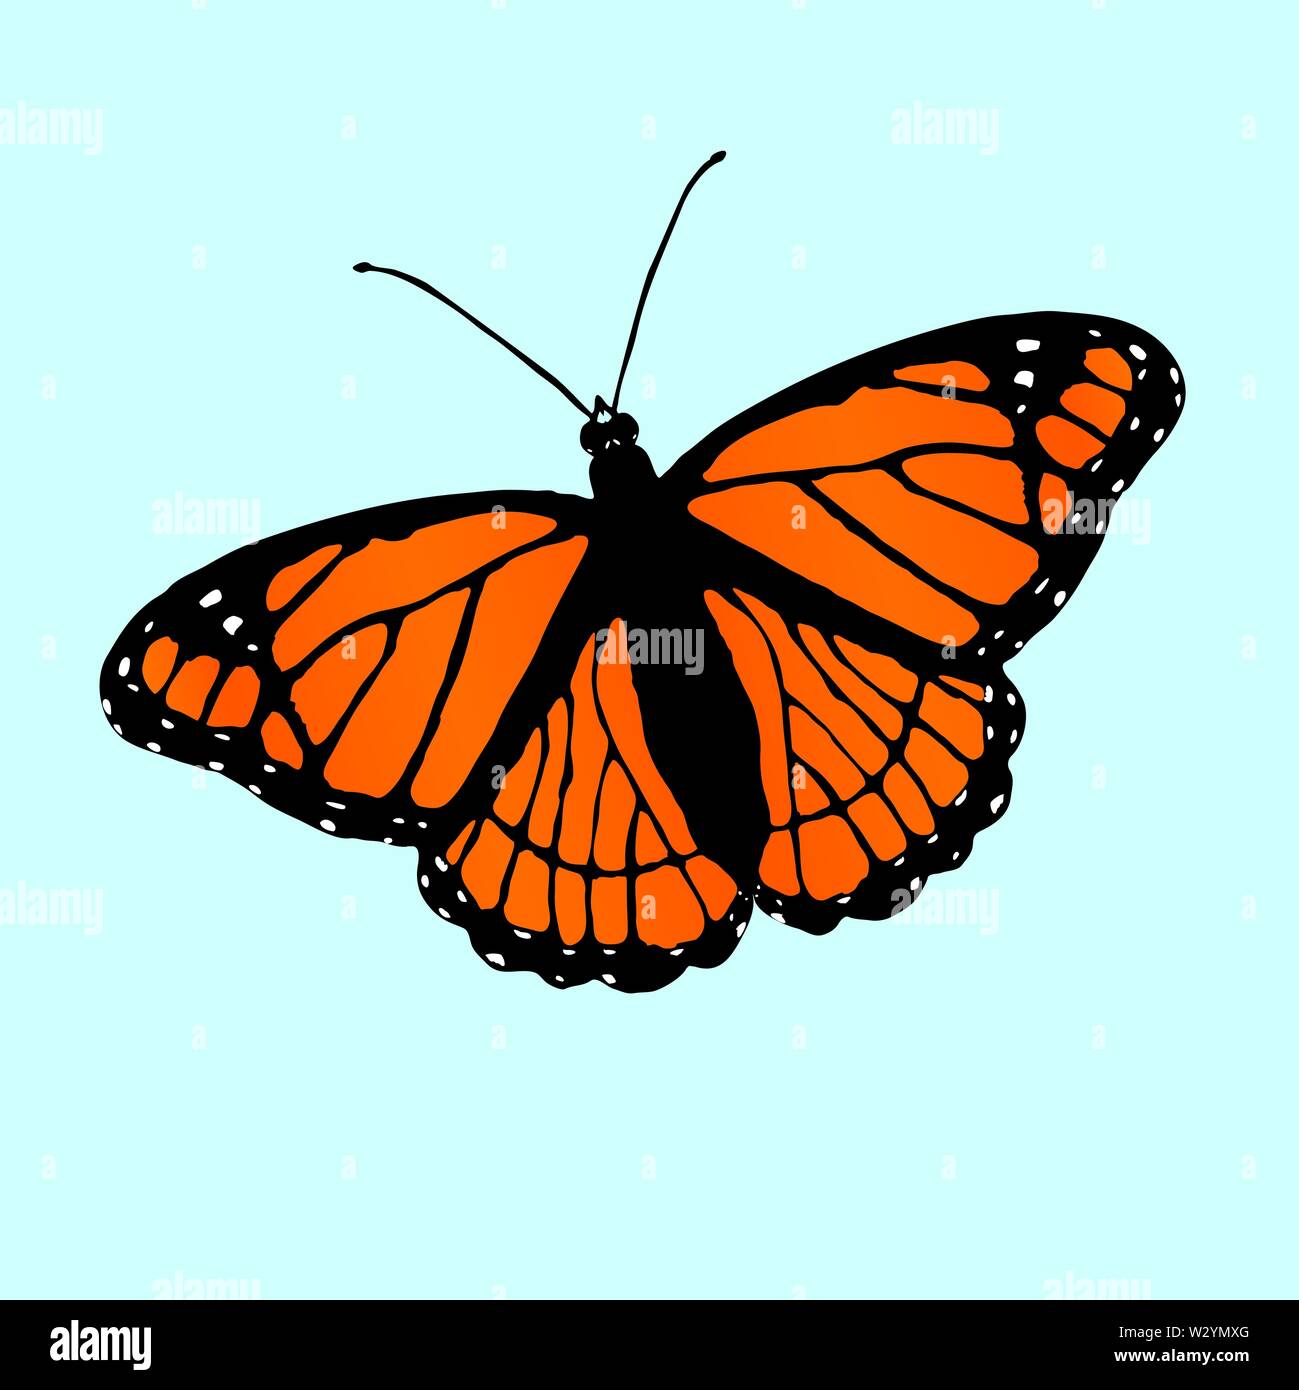 Ein Vektor Illustration eines Vizekönigs Schmetterling leicht schräg auf einem blauen Hintergrund Stock Vektor